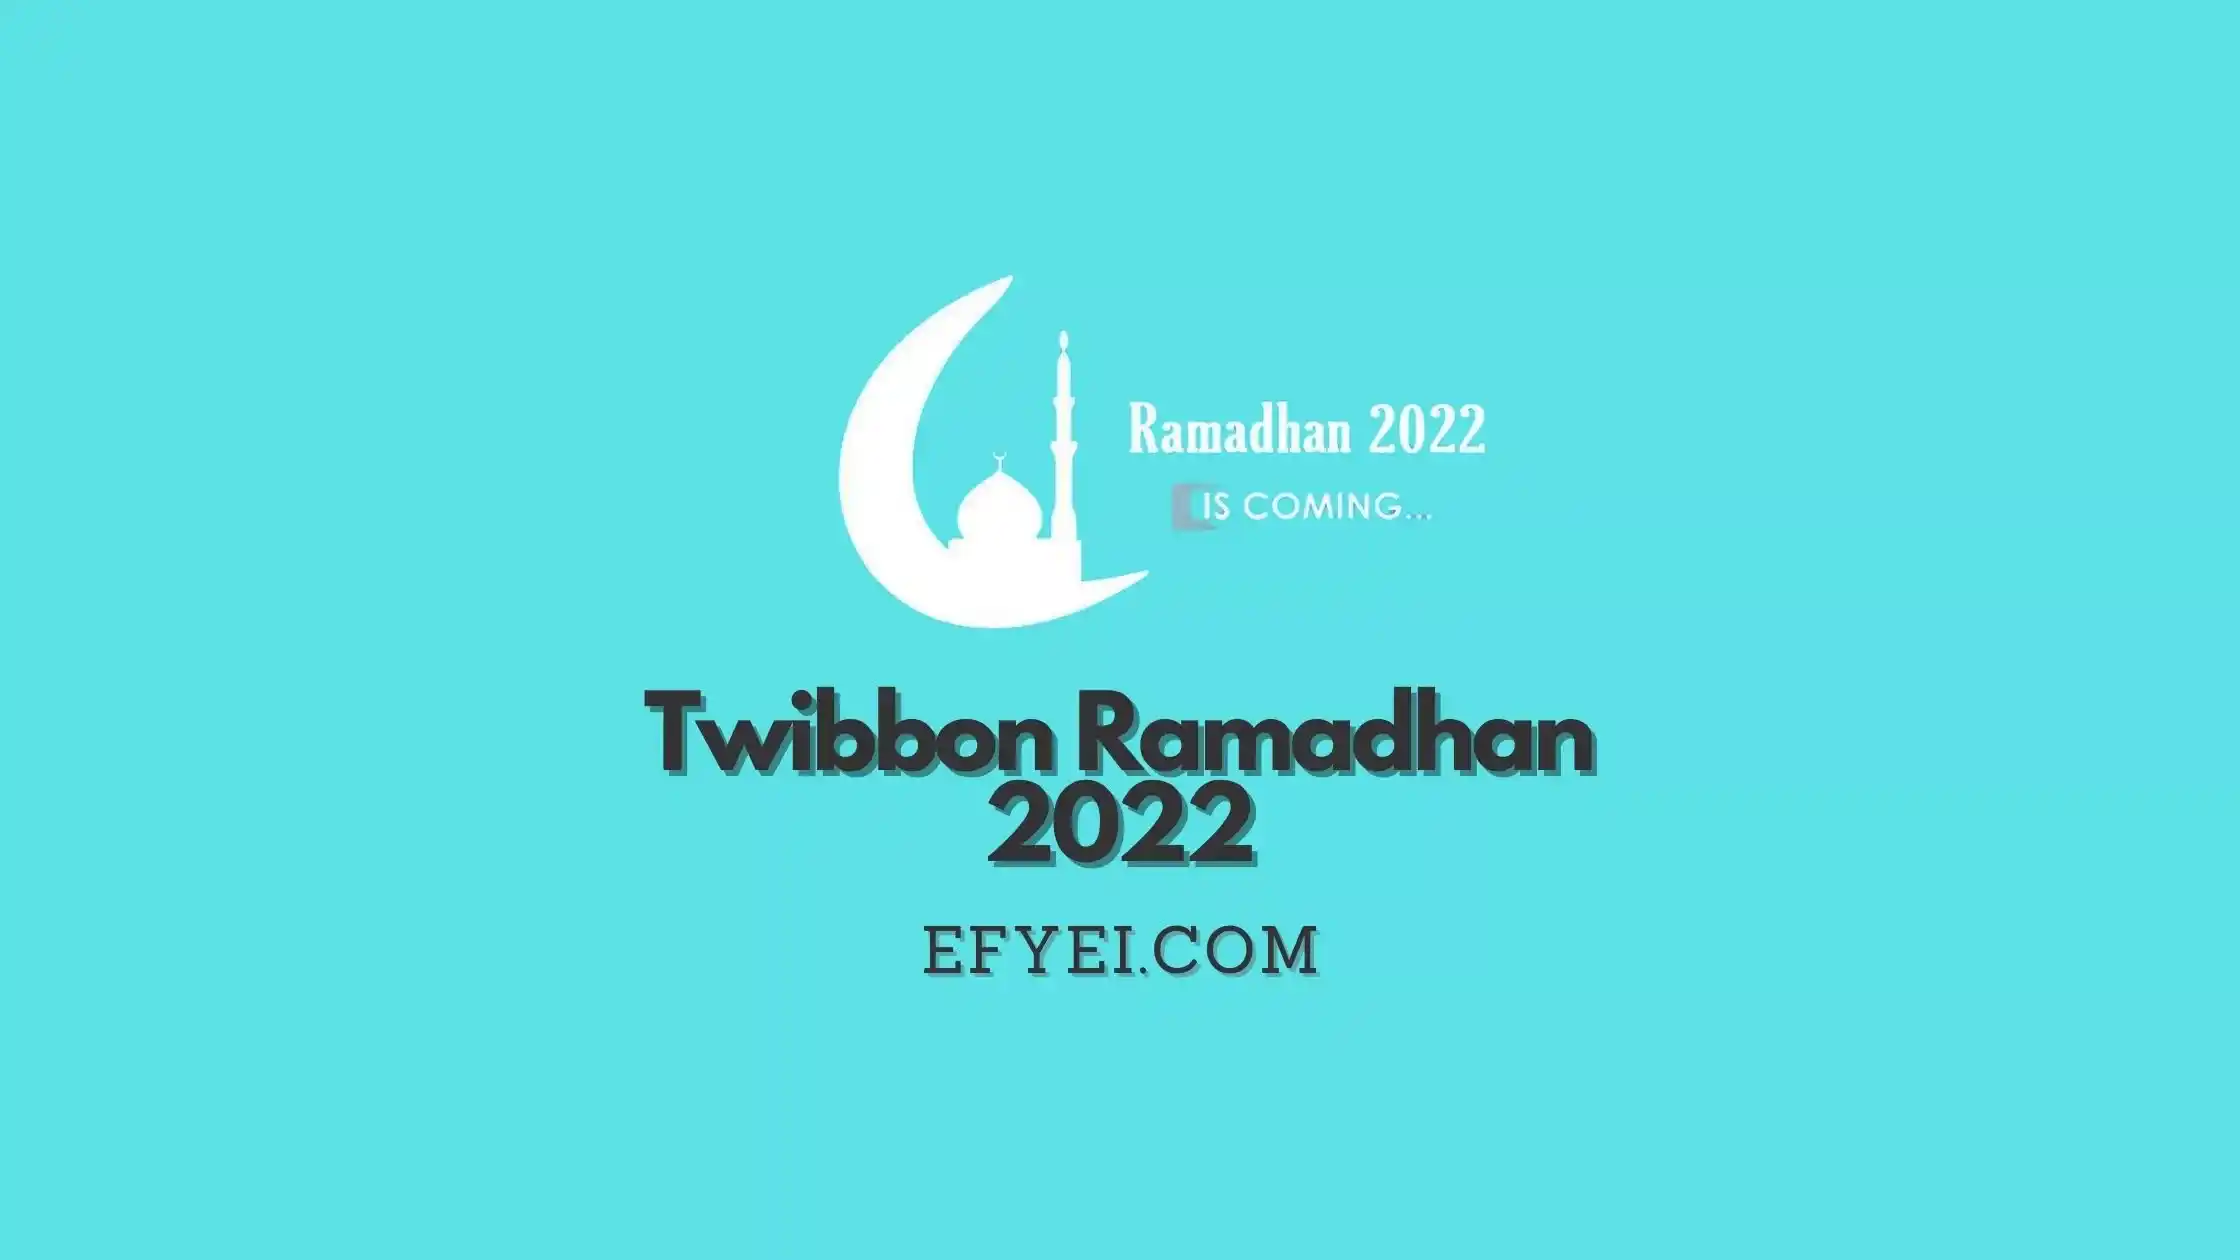 Twibbon Ramadhan 2022